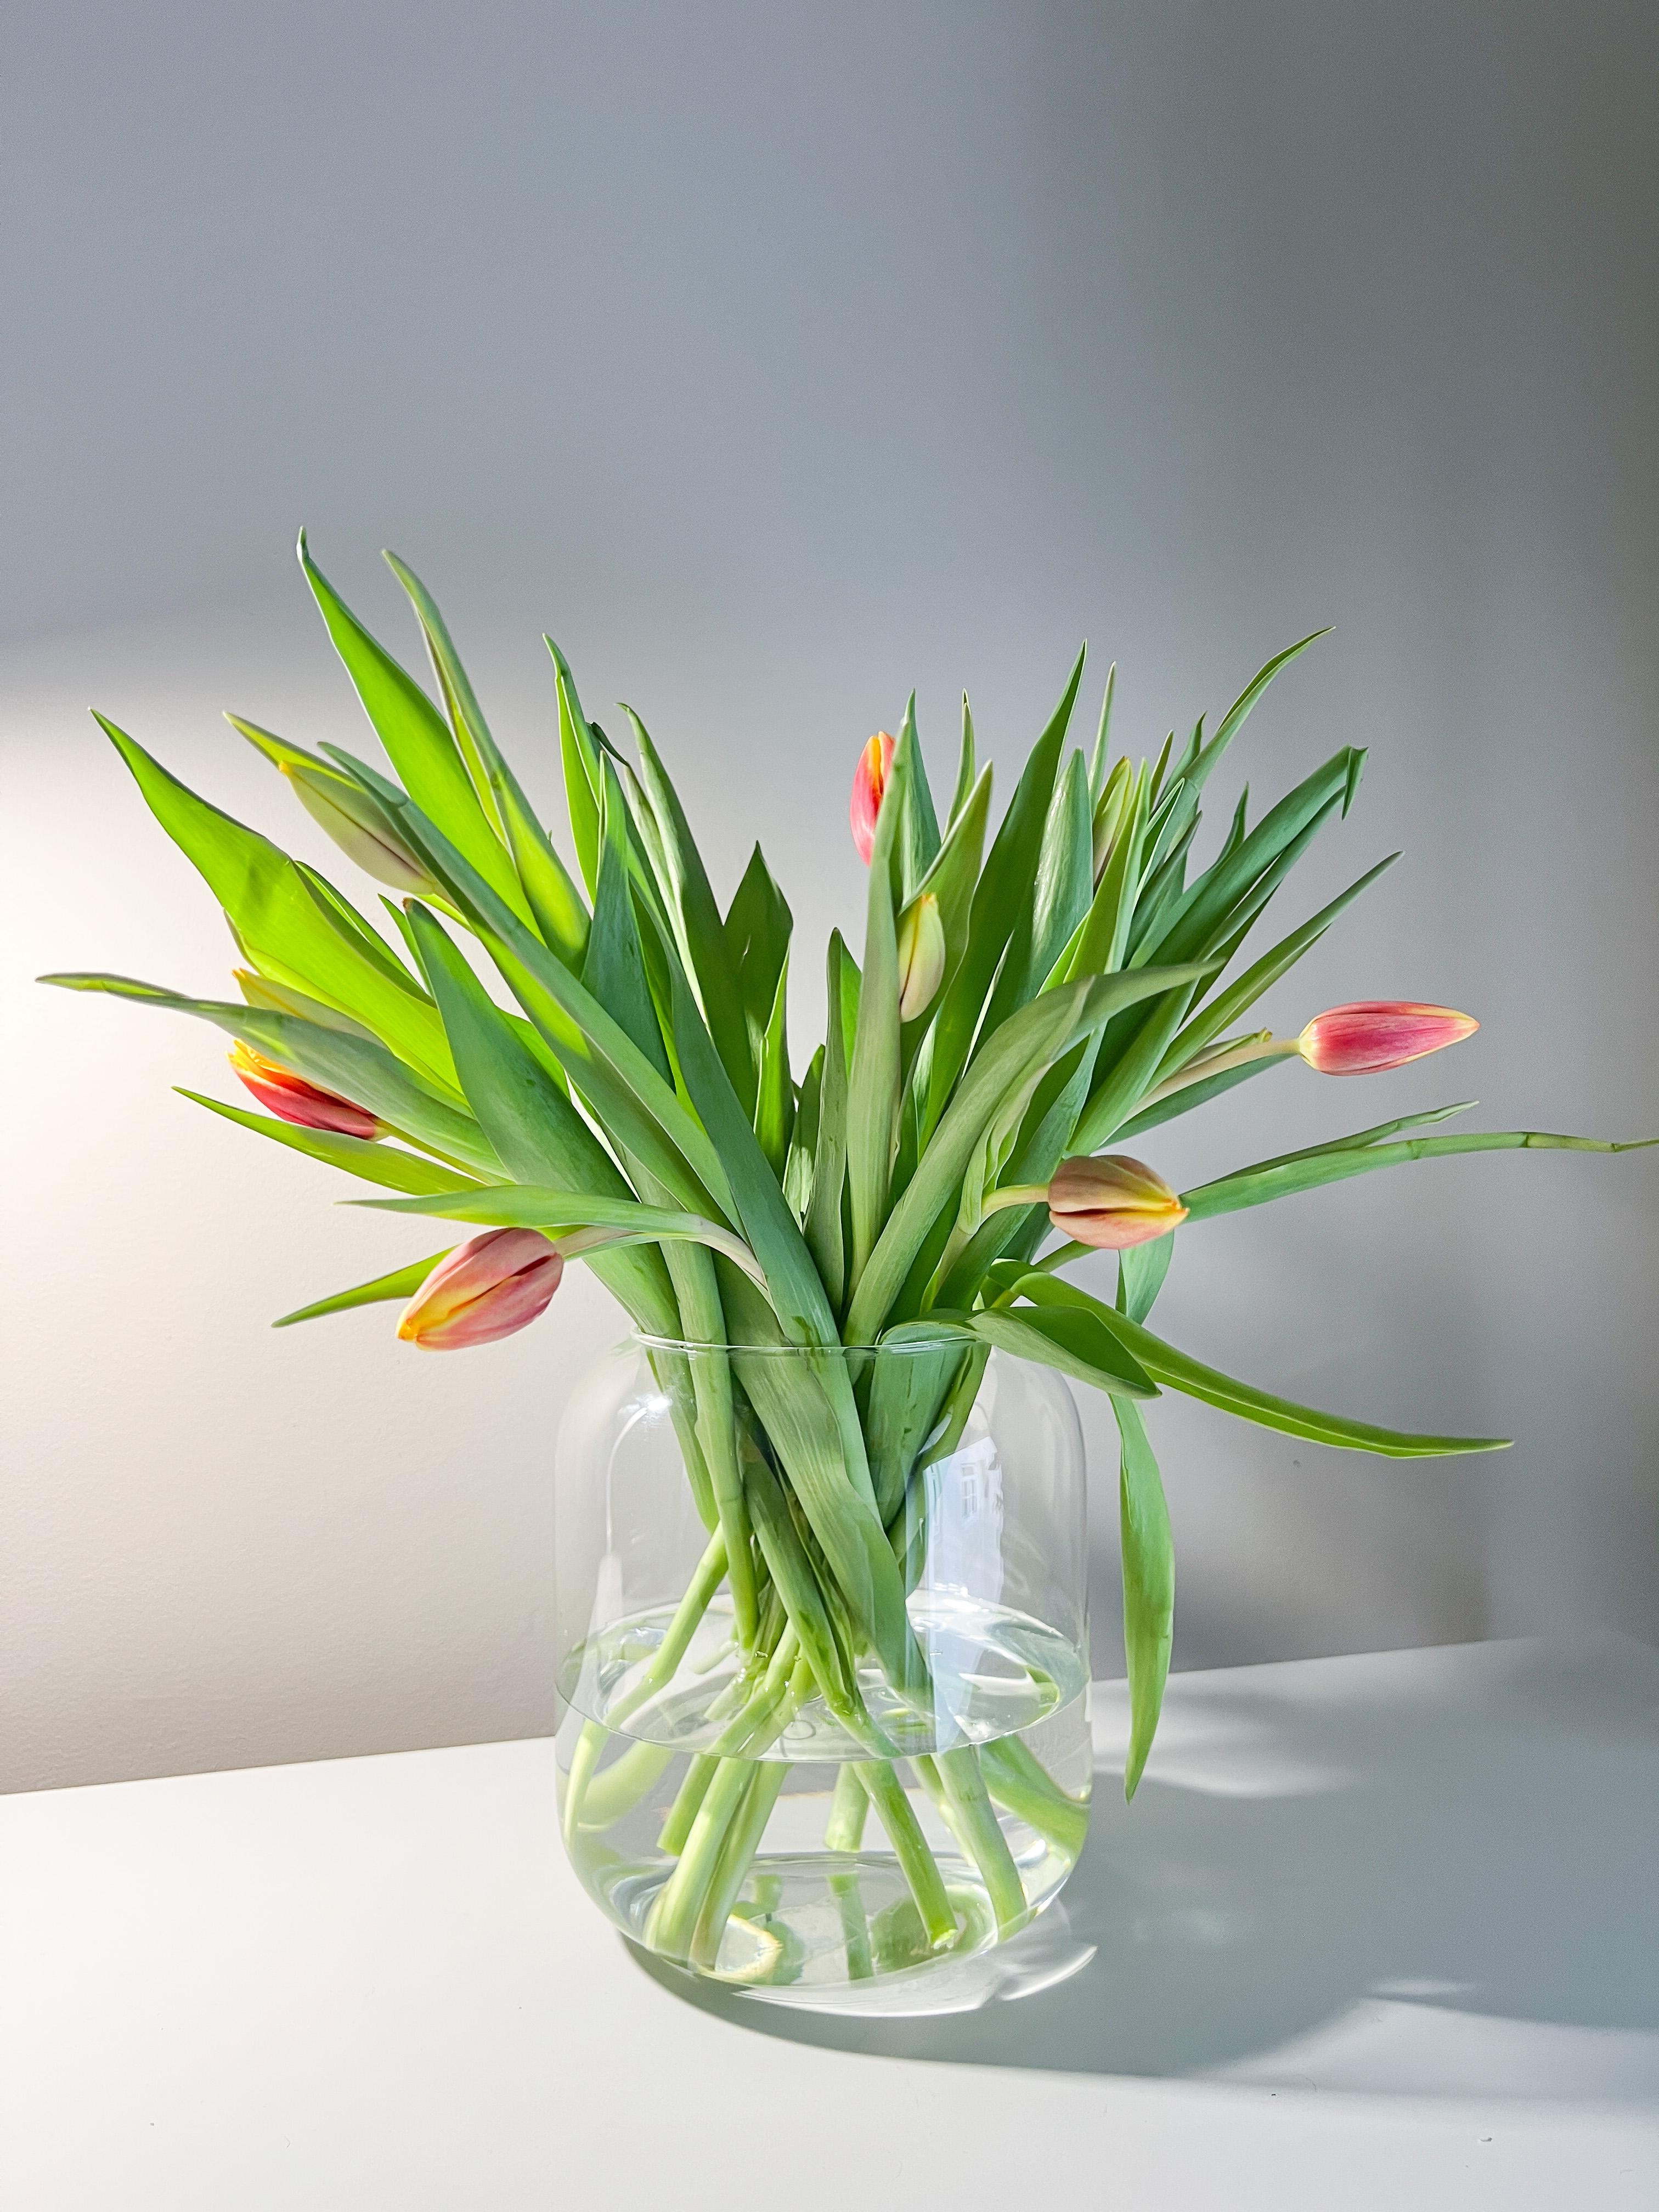 Wenn es draußen weiter so regnet, müssen halt mehr Tulpen in die Wohnung. #frühlingsboten #tulpen #winterzeit